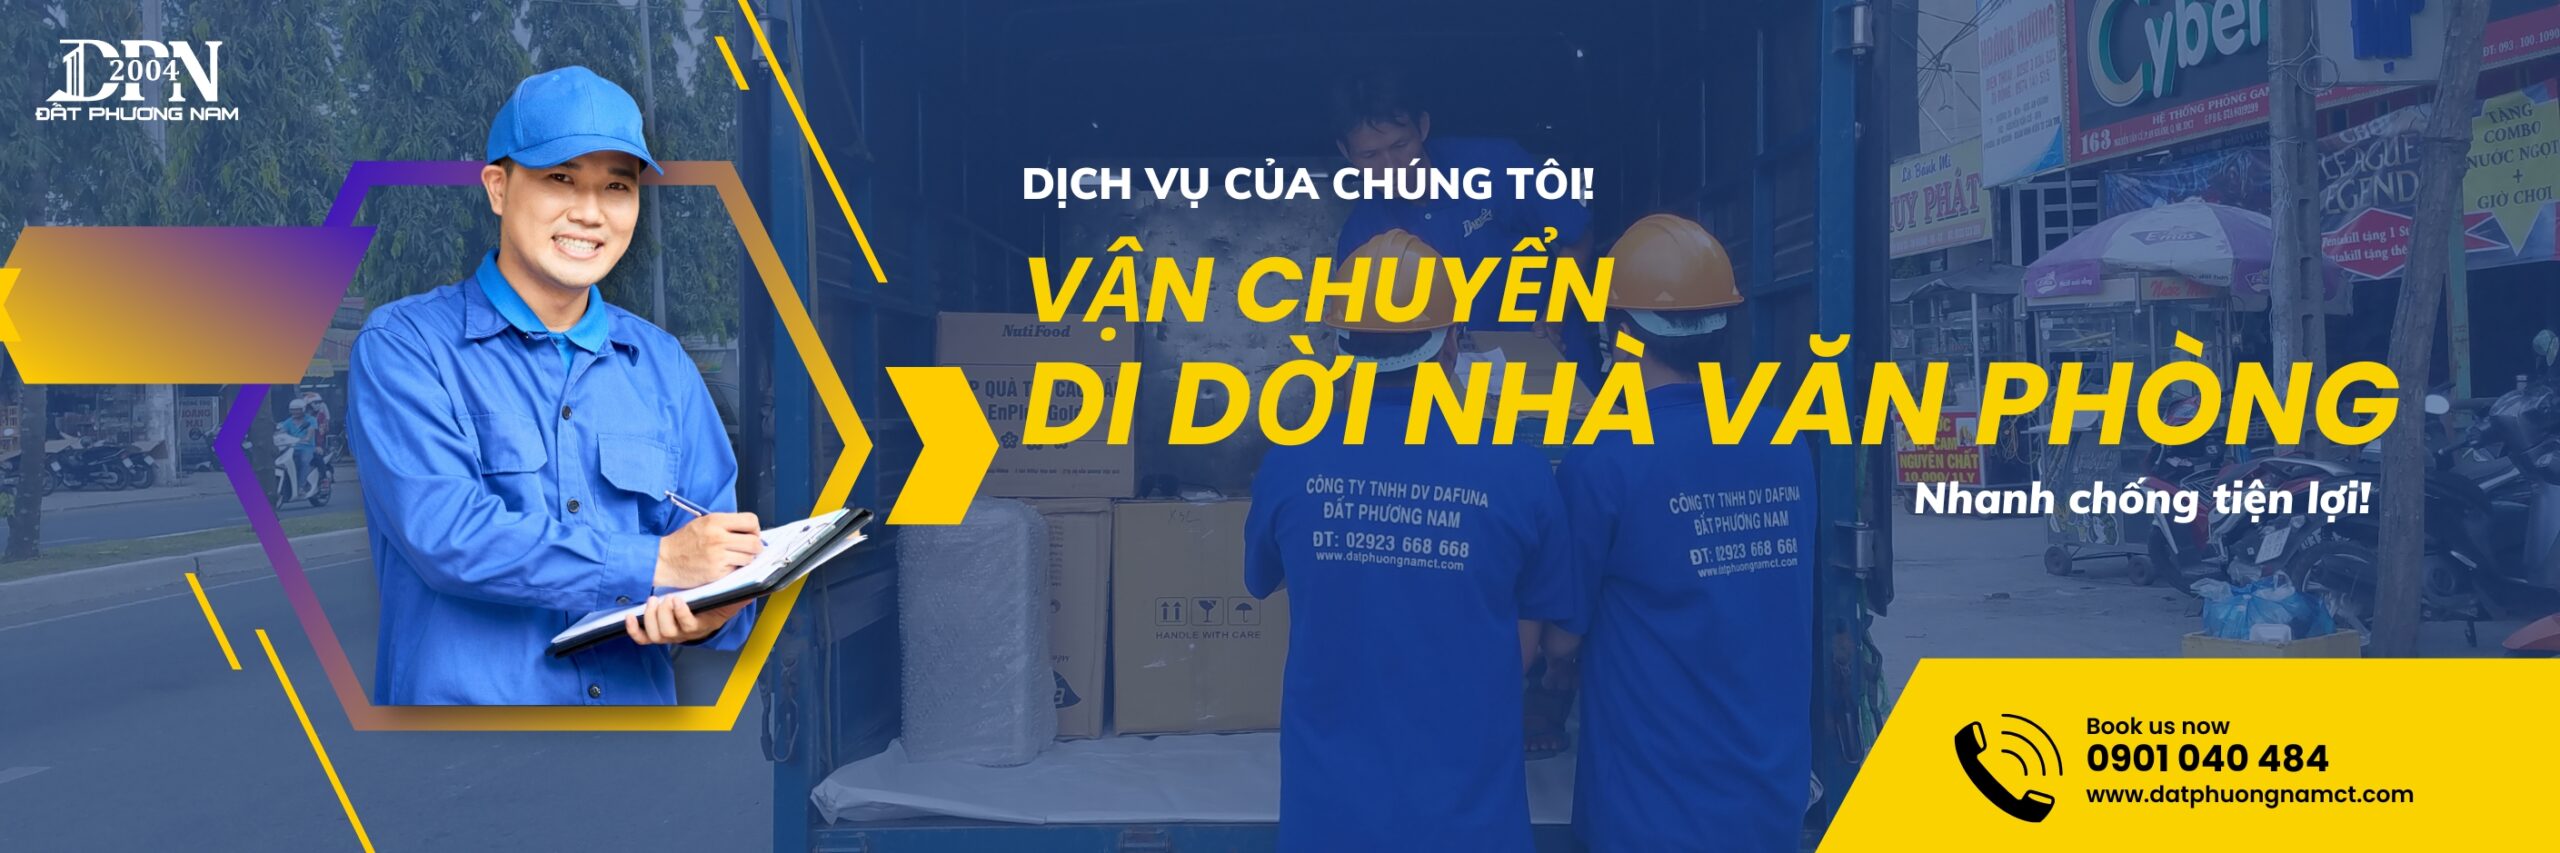 dịch vu van chuyen di doi nha